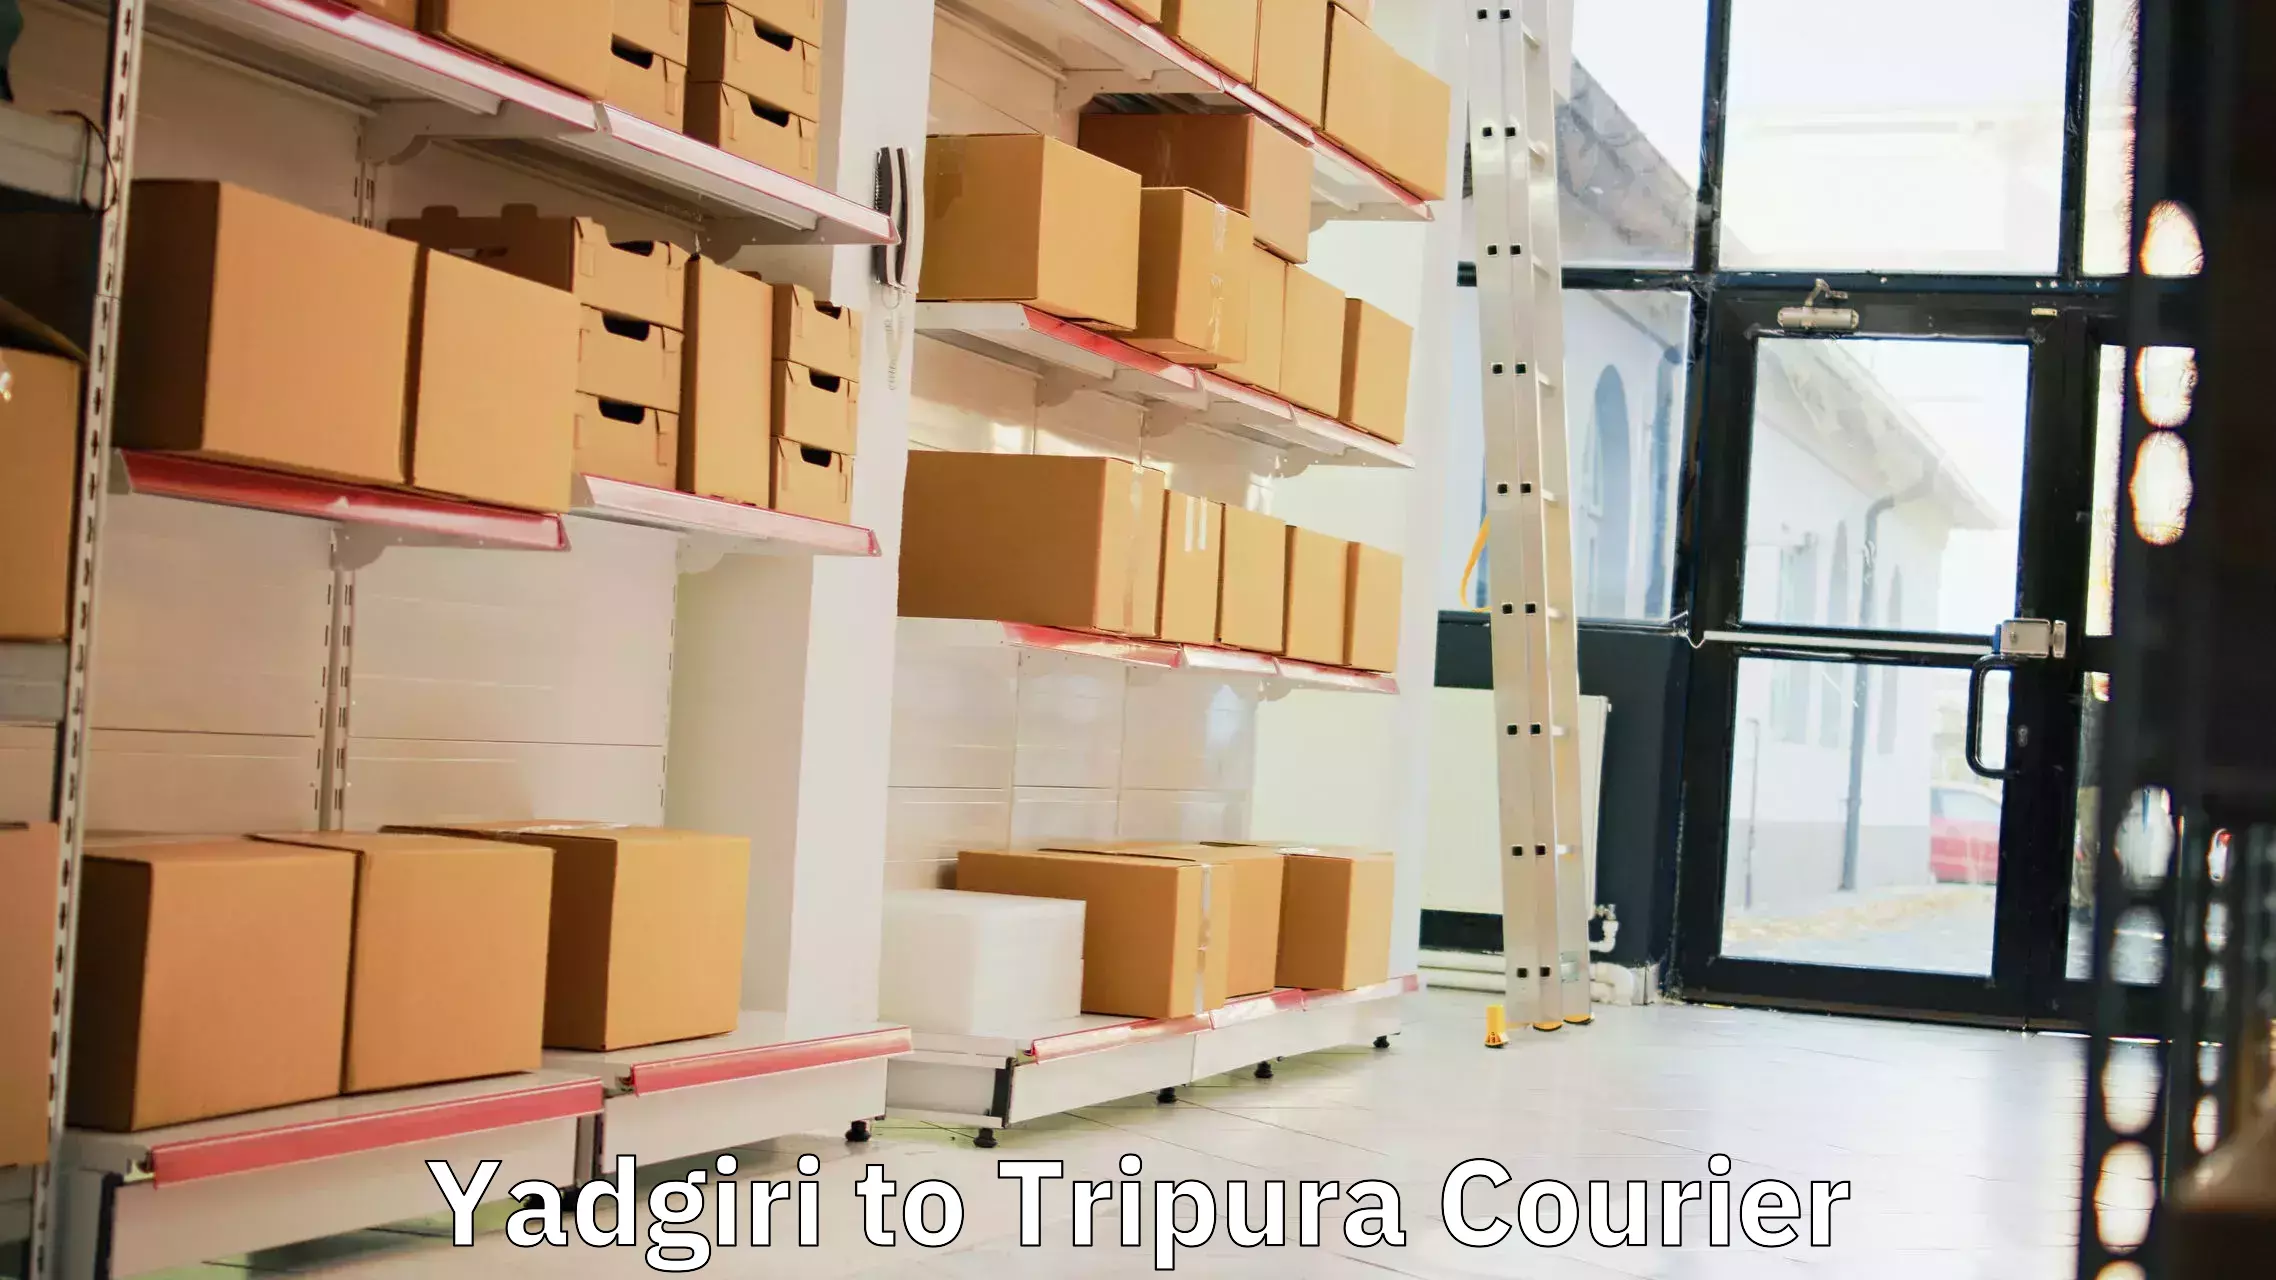 Nationwide shipping capabilities in Yadgiri to Tripura